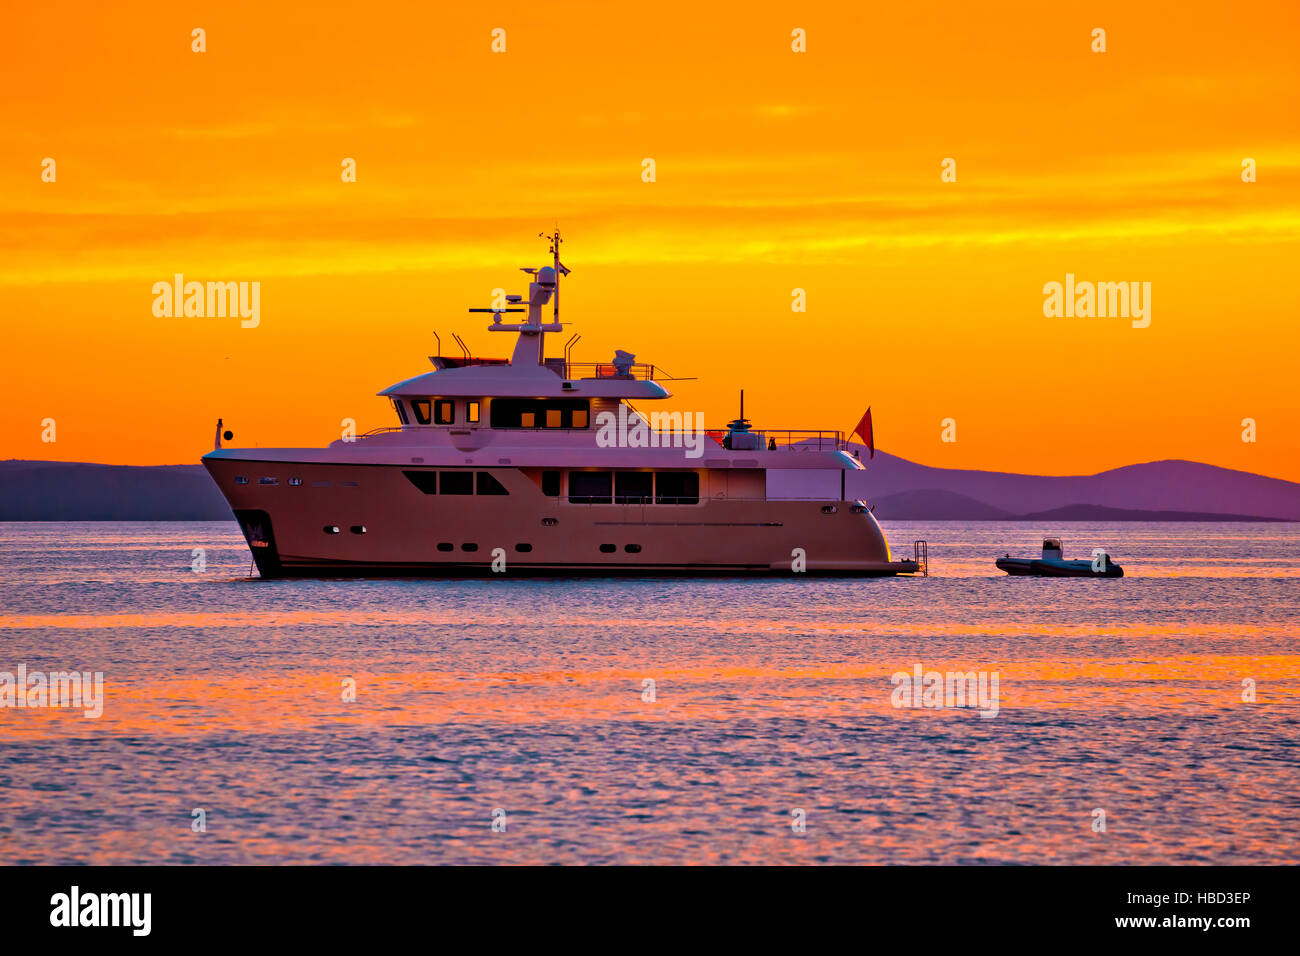 Yacht at golden sunset on open sea Stock Photo